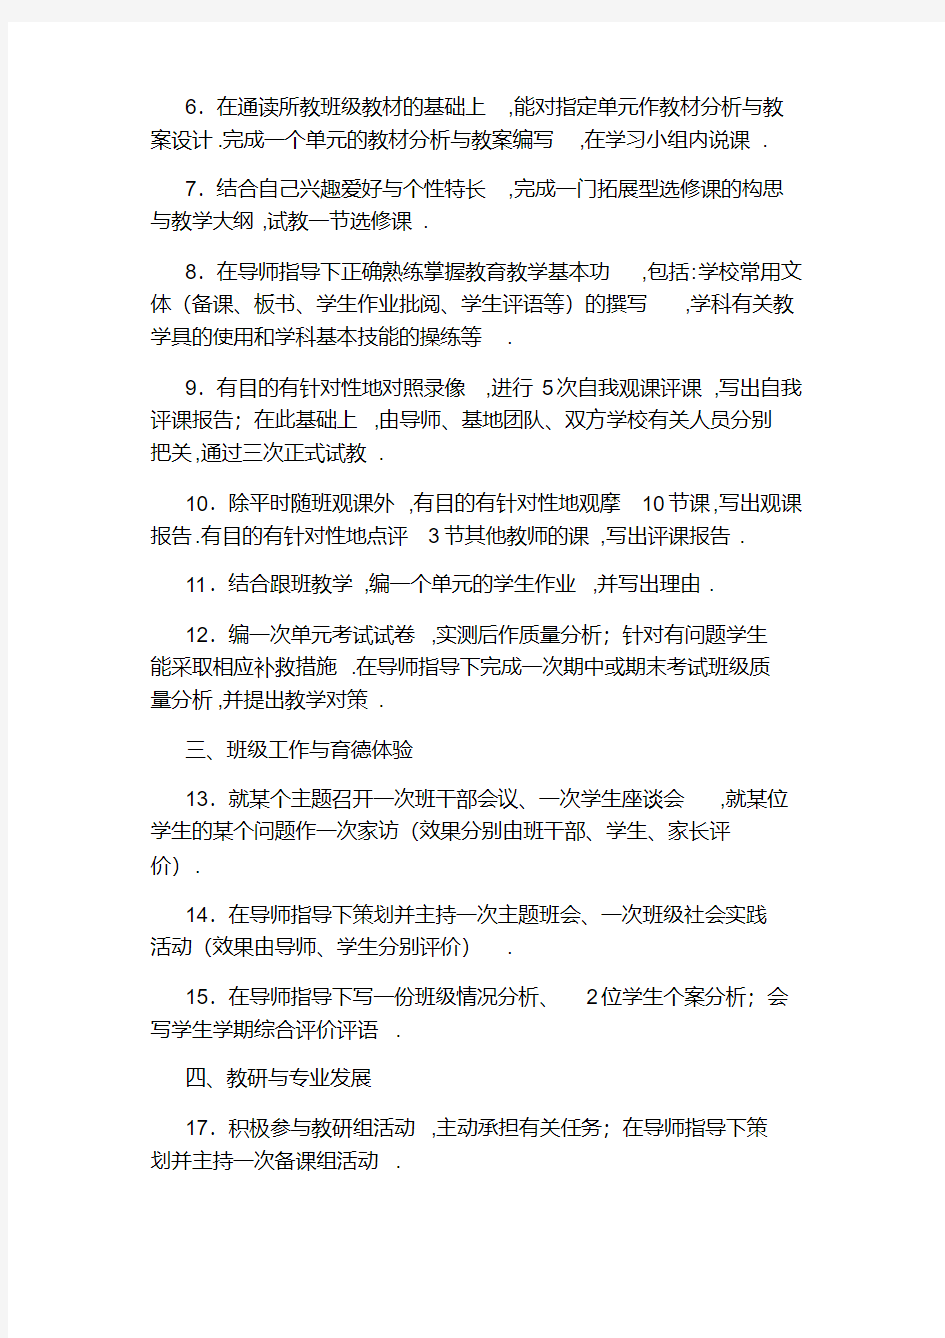 虹口区实施《上海市中小学见习教师规范化培训内容与要求》细则